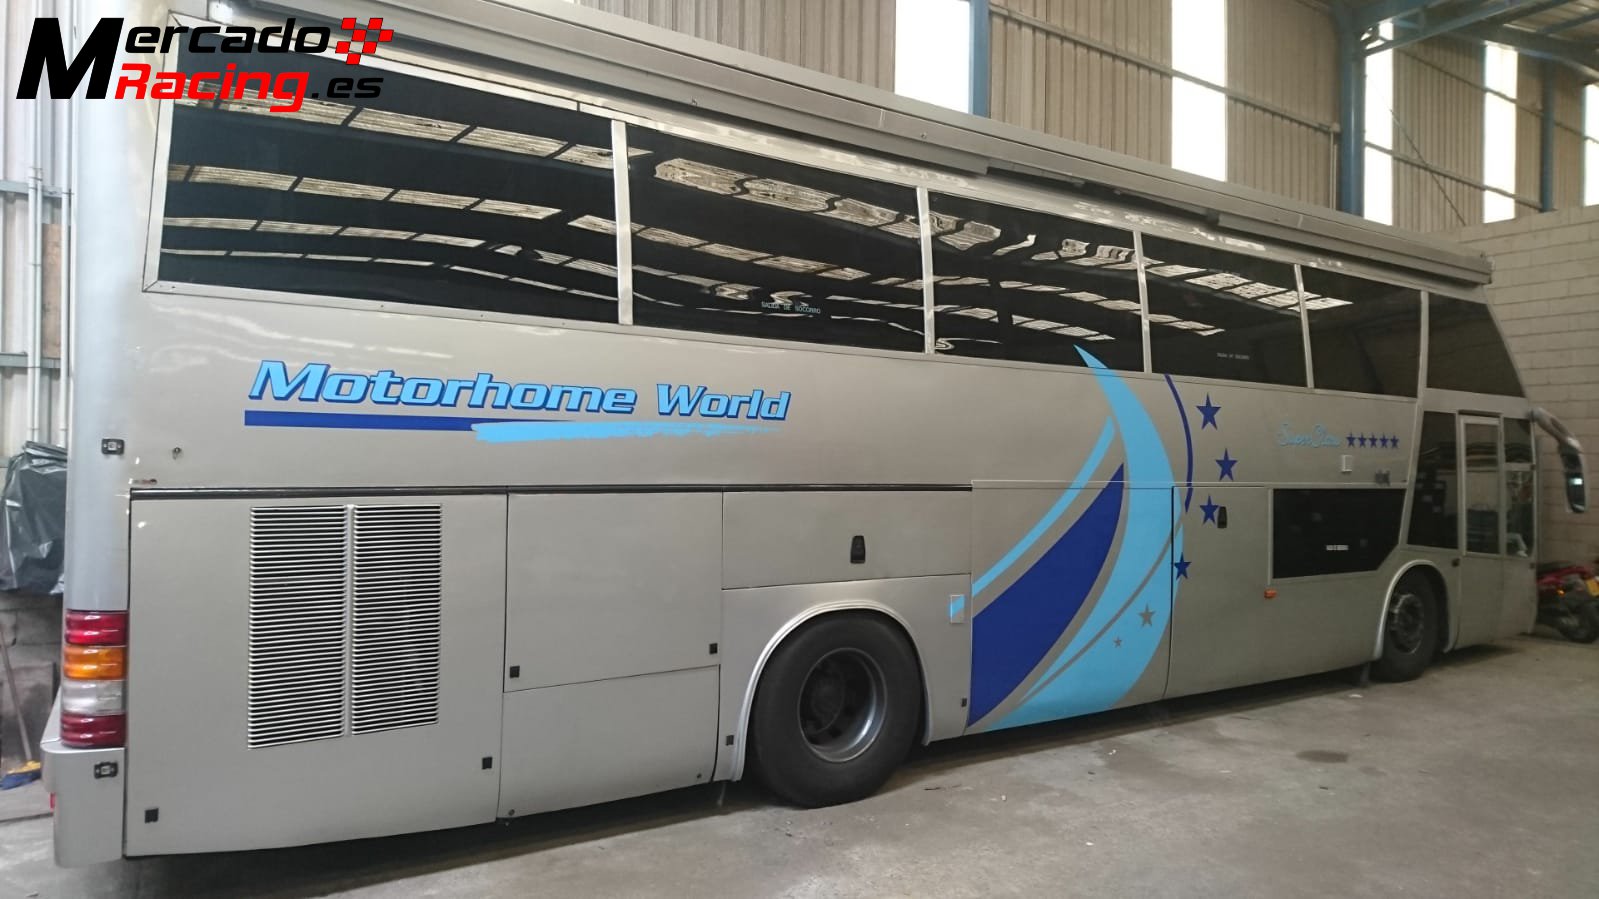 Autobus asistencia -taller-vivienda,motor mercedes